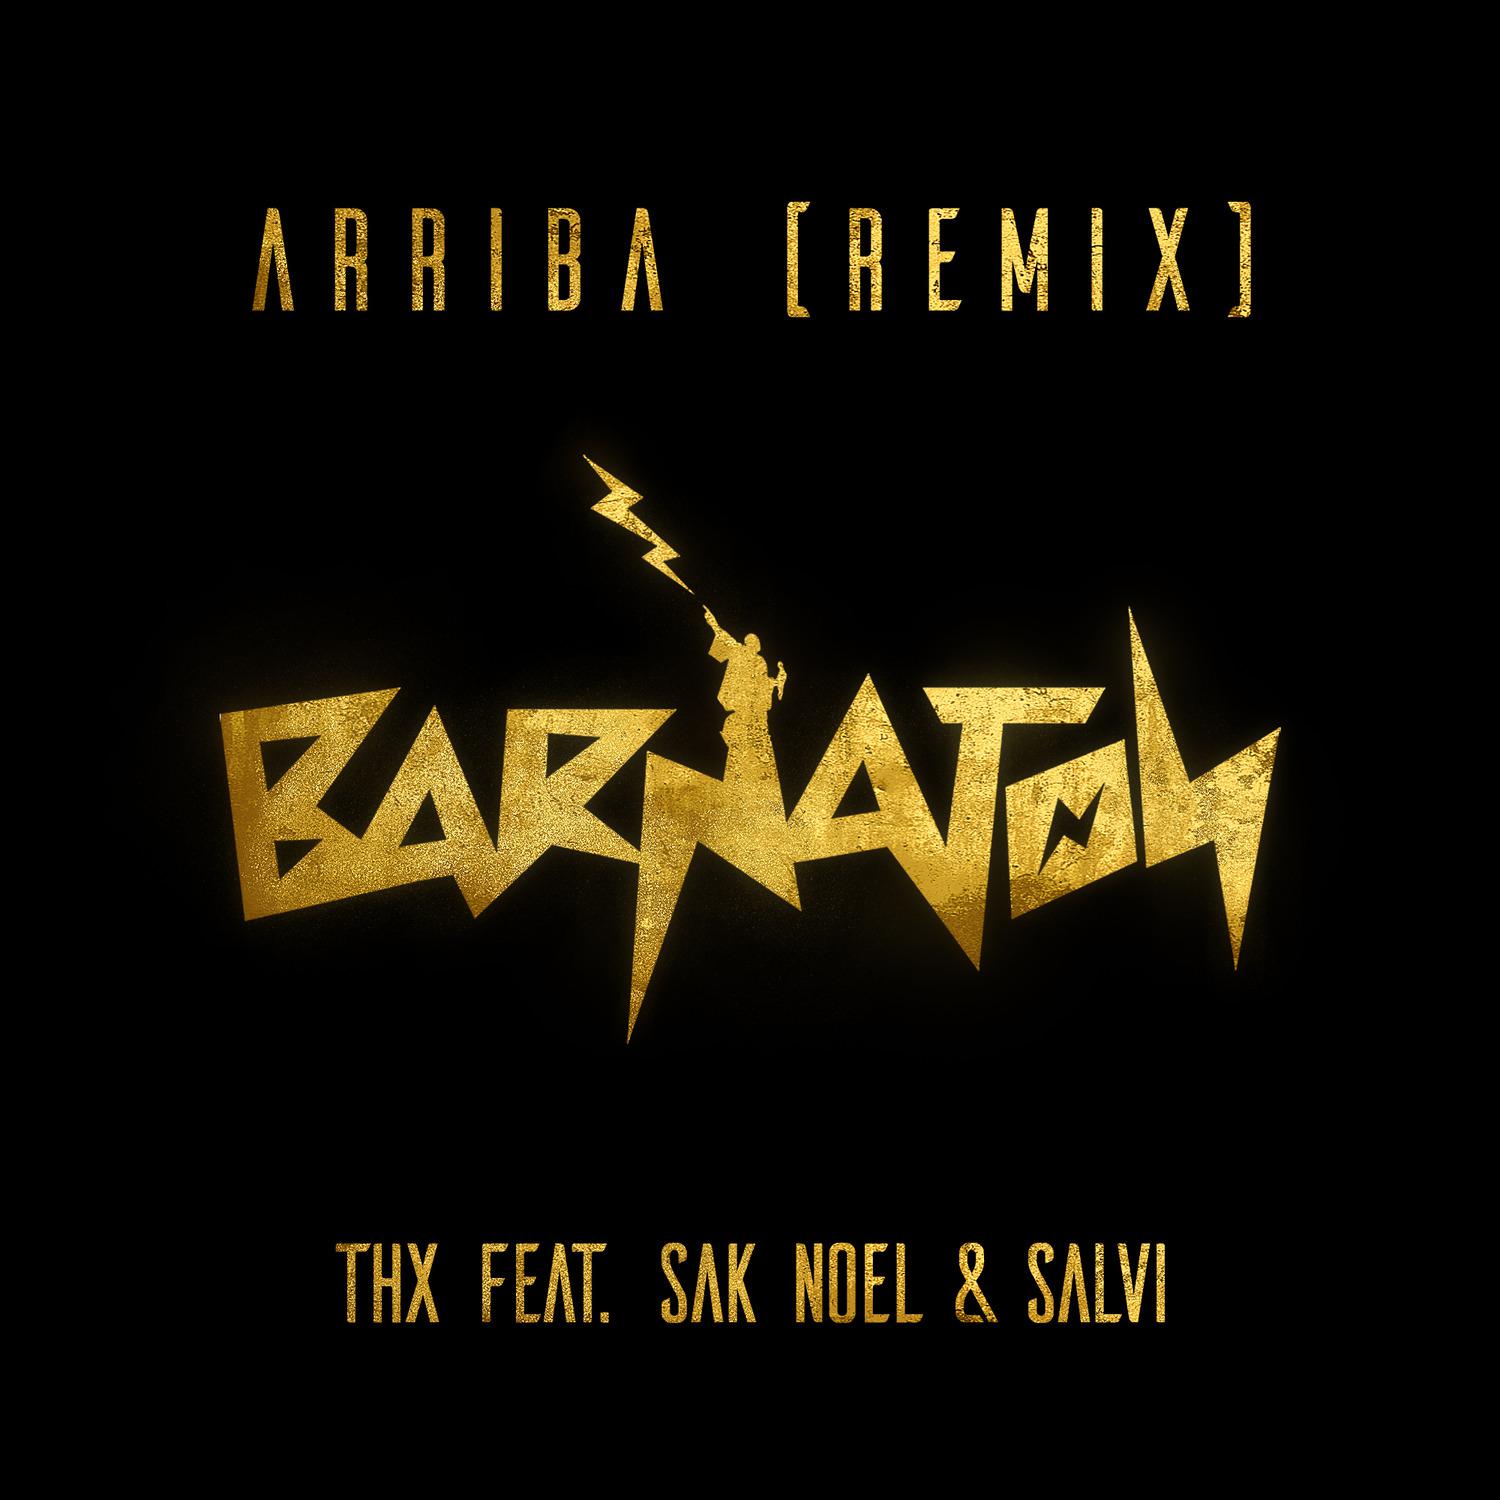 THK - Arriba (Remix)